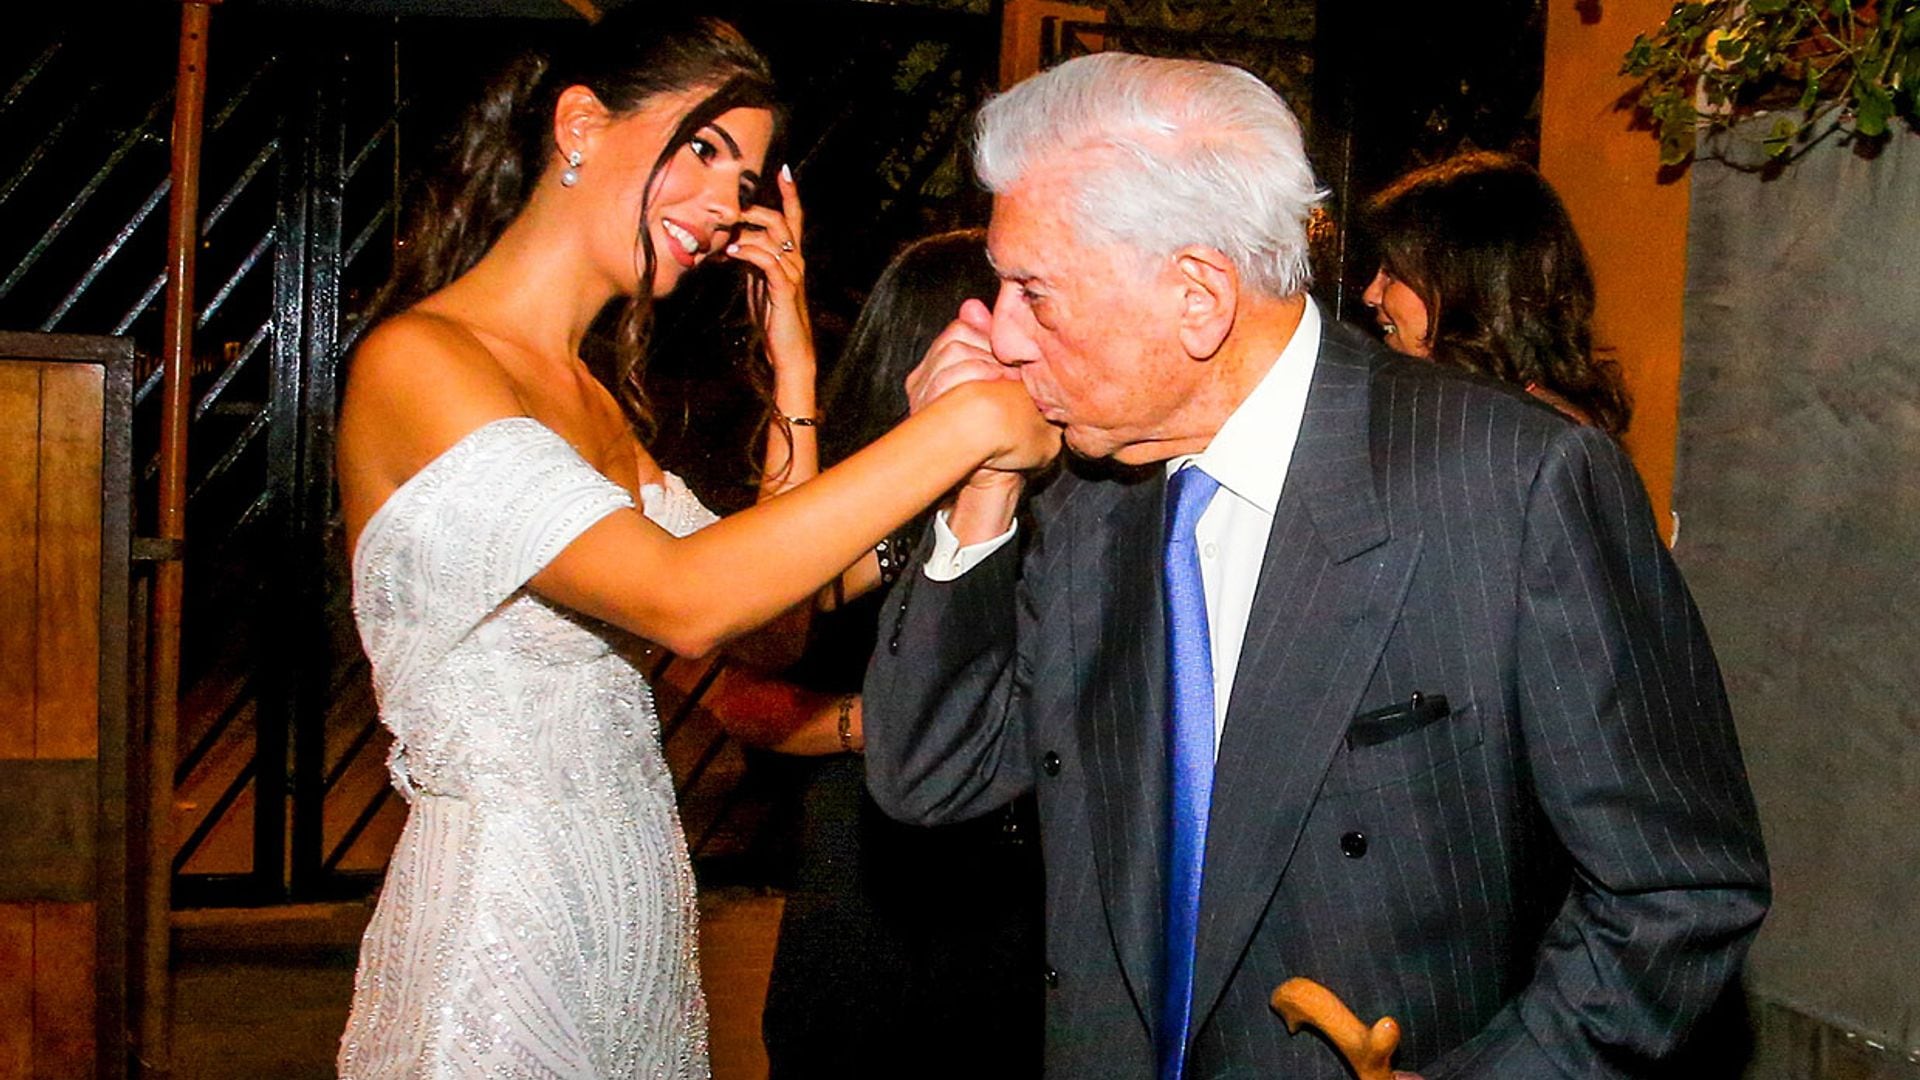 Todas las imágenes que no se habían visto de la boda de Josefina Vargas Llosa